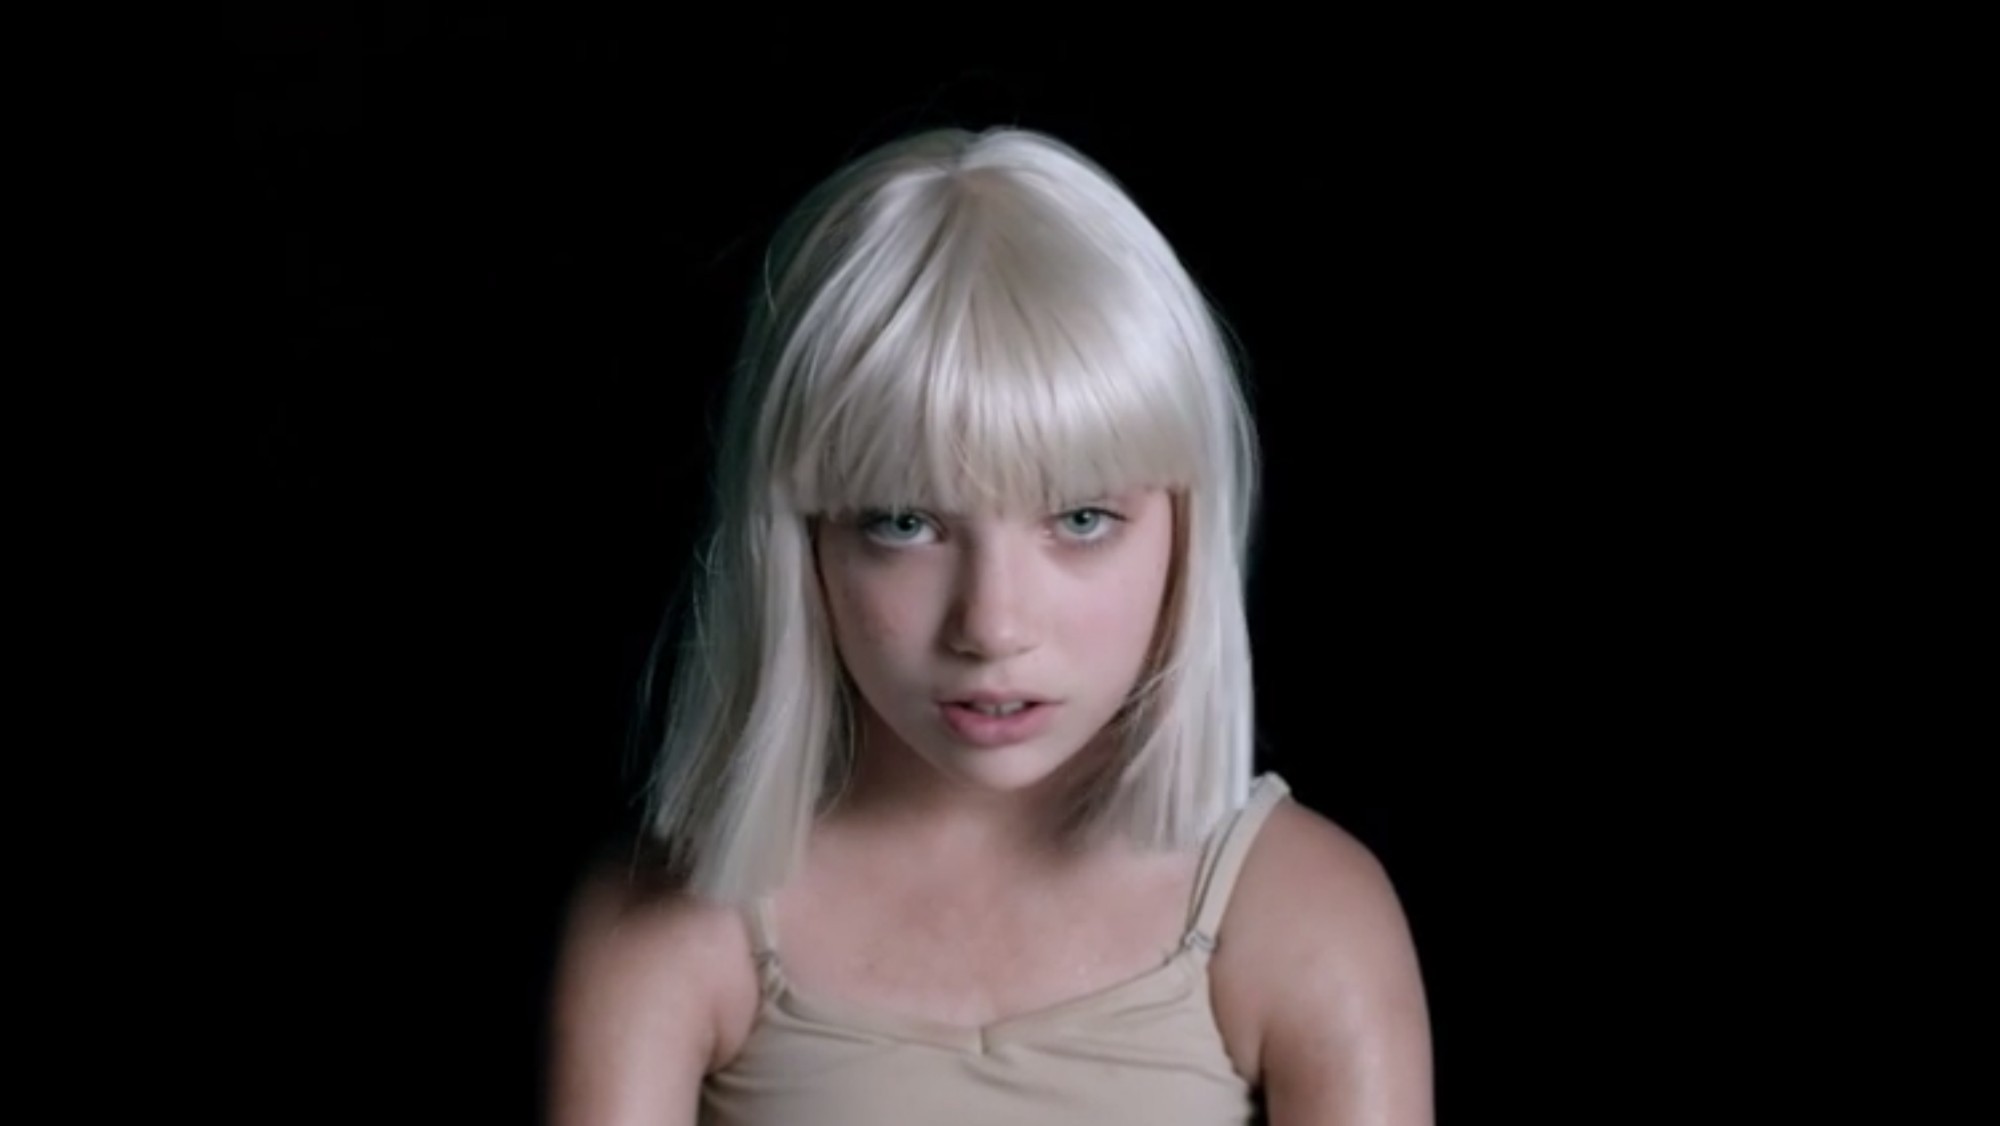 Вышел новый клип Sia с Мэдди Зиглер в главной роли